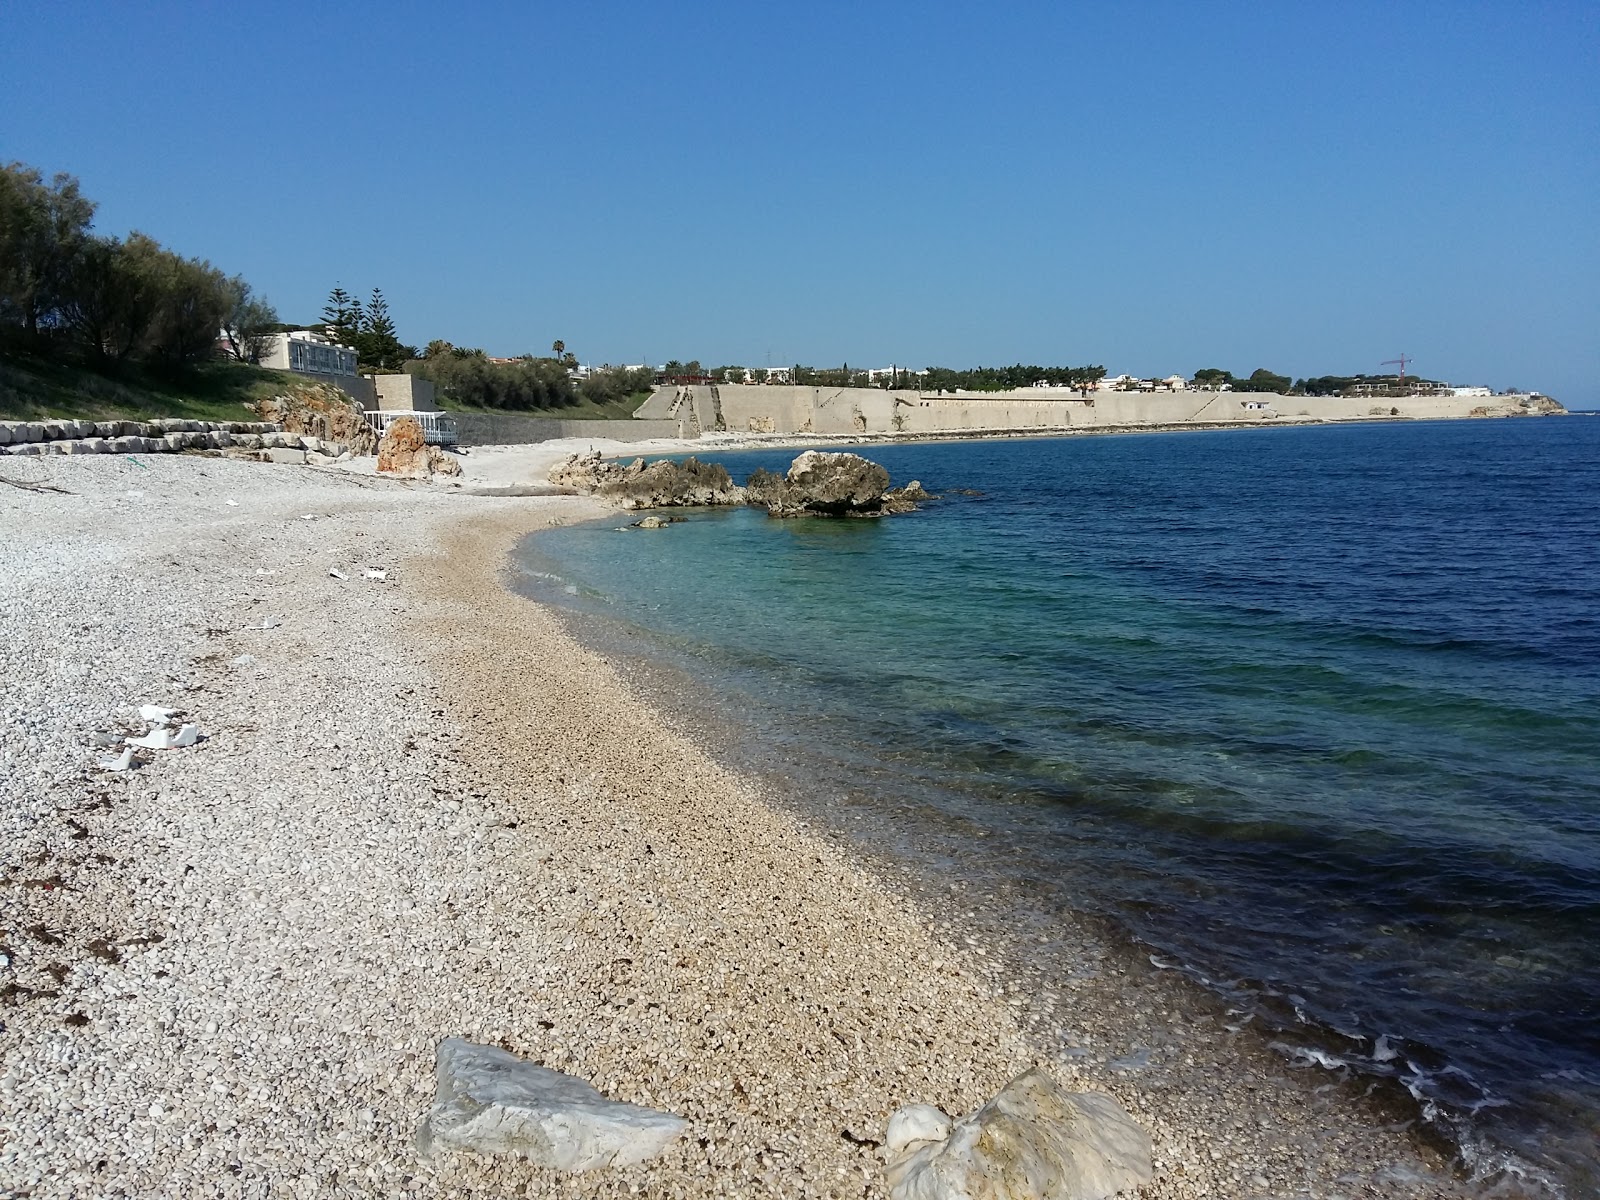 Salsello beach'in fotoğrafı geniş plaj ile birlikte